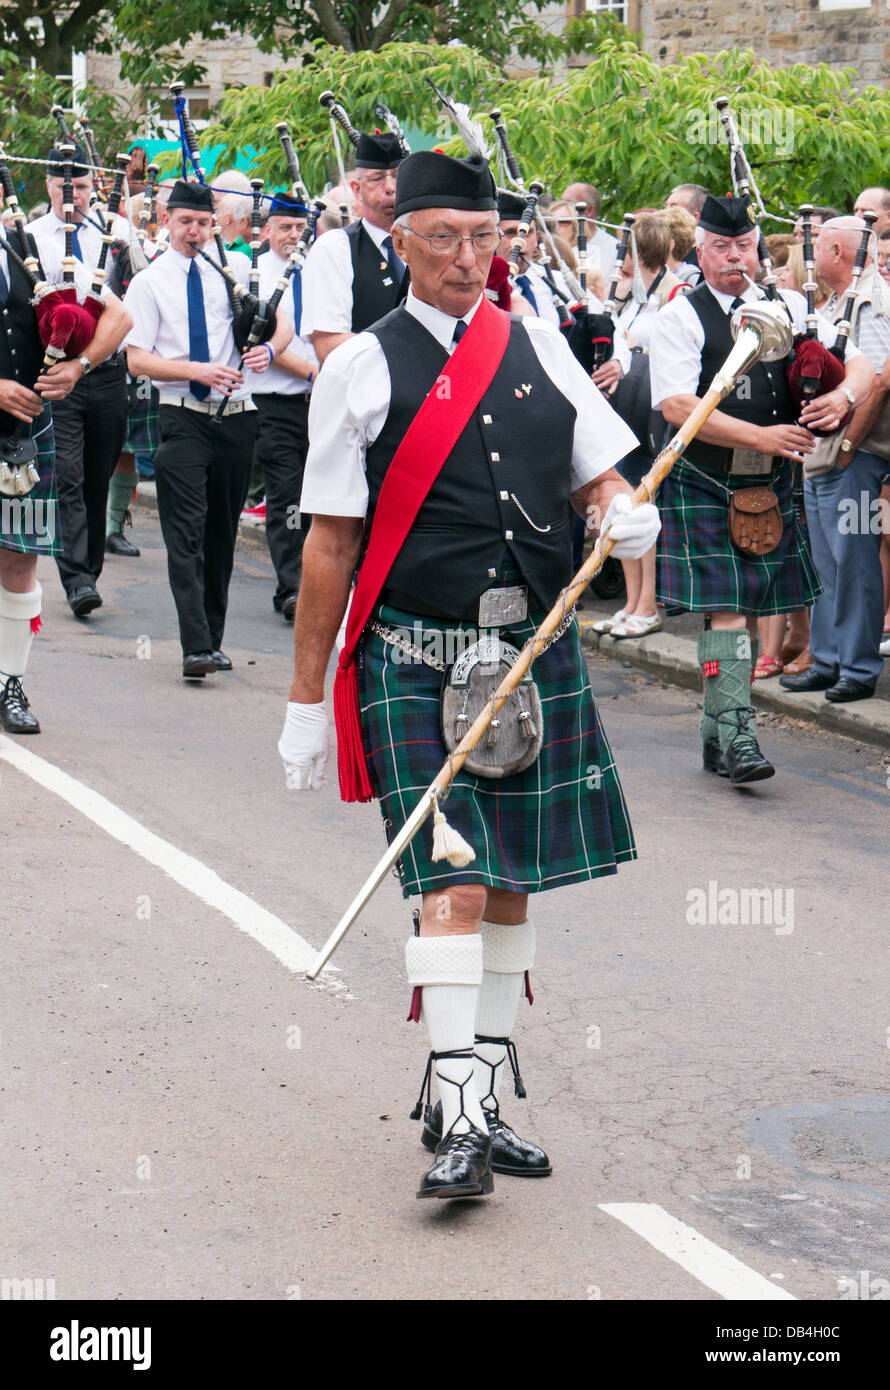 Highland Rothbury cornemuses défilent à travers la ville, Festival de musique traditionnelle, dans le nord de l'Angleterre, Royaume-Uni Banque D'Images